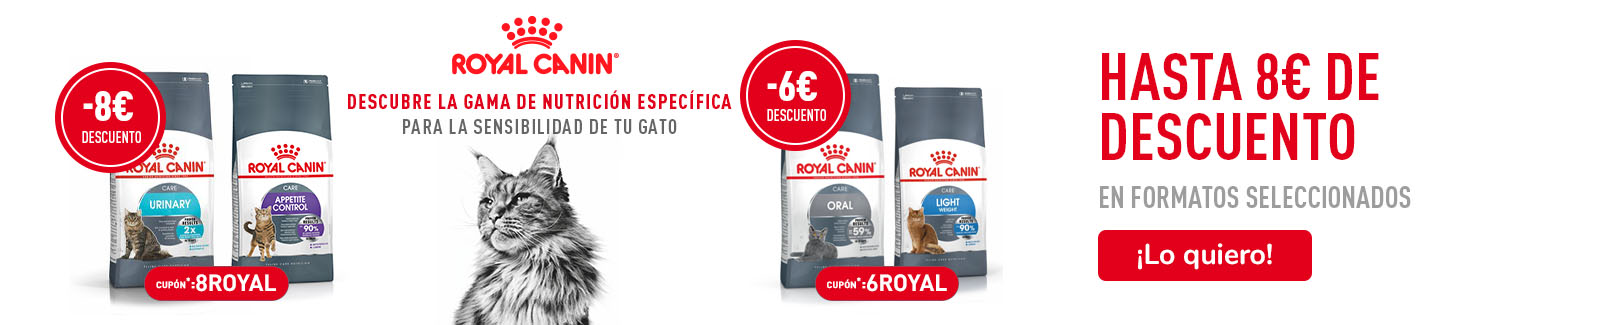 -8€ o -6€ de dto en pienso Royal Canin con los cupones 8ROYAL y 6ROYAL